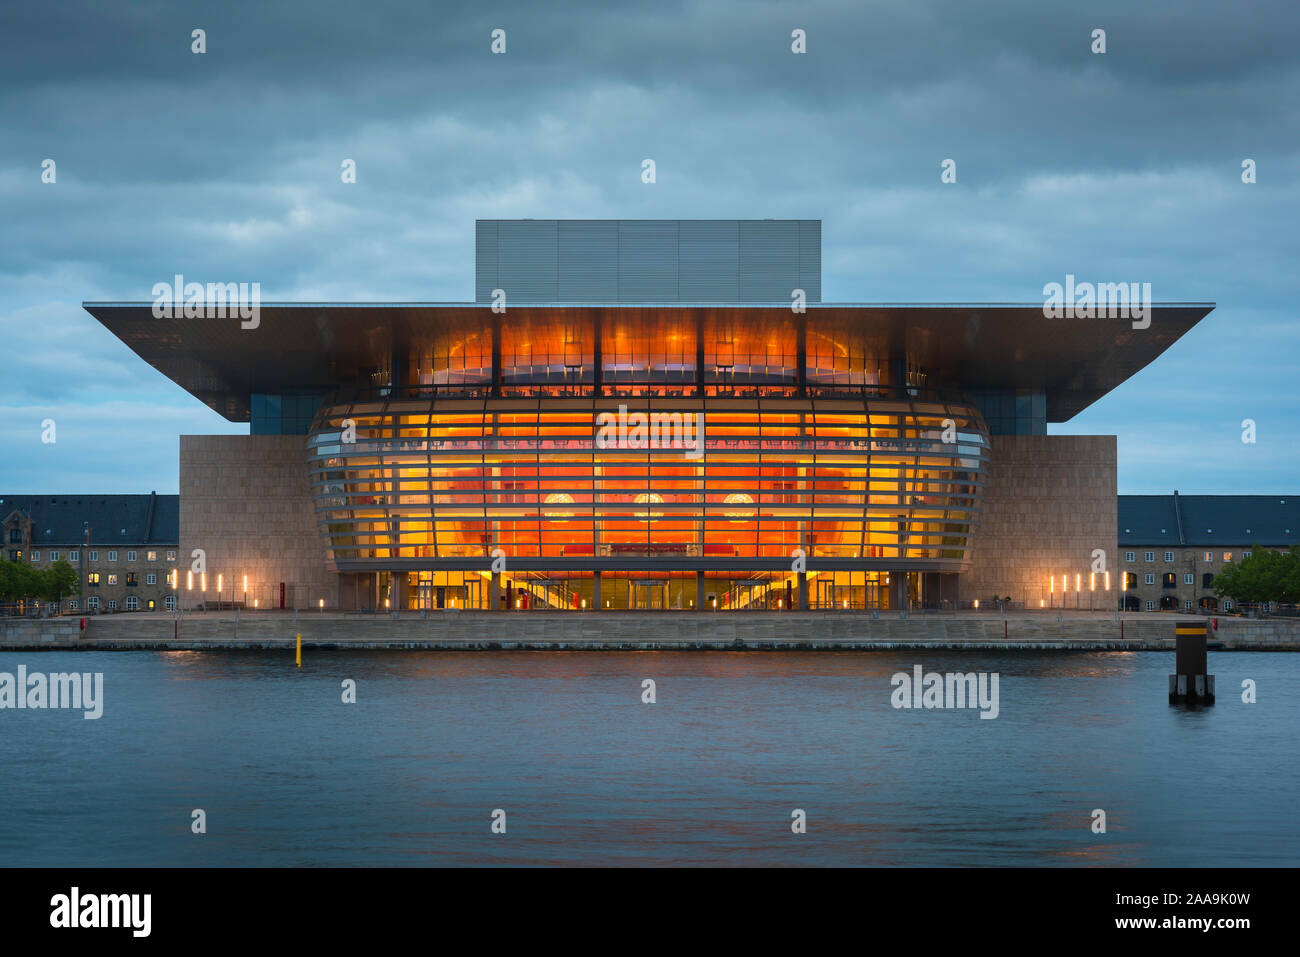 L'Opéra de Copenhague, vue au crépuscule de l'Opéra conçu par Henning Larsen sur l'île de Holmen, le centre de Copenhague, Danemark. Banque D'Images